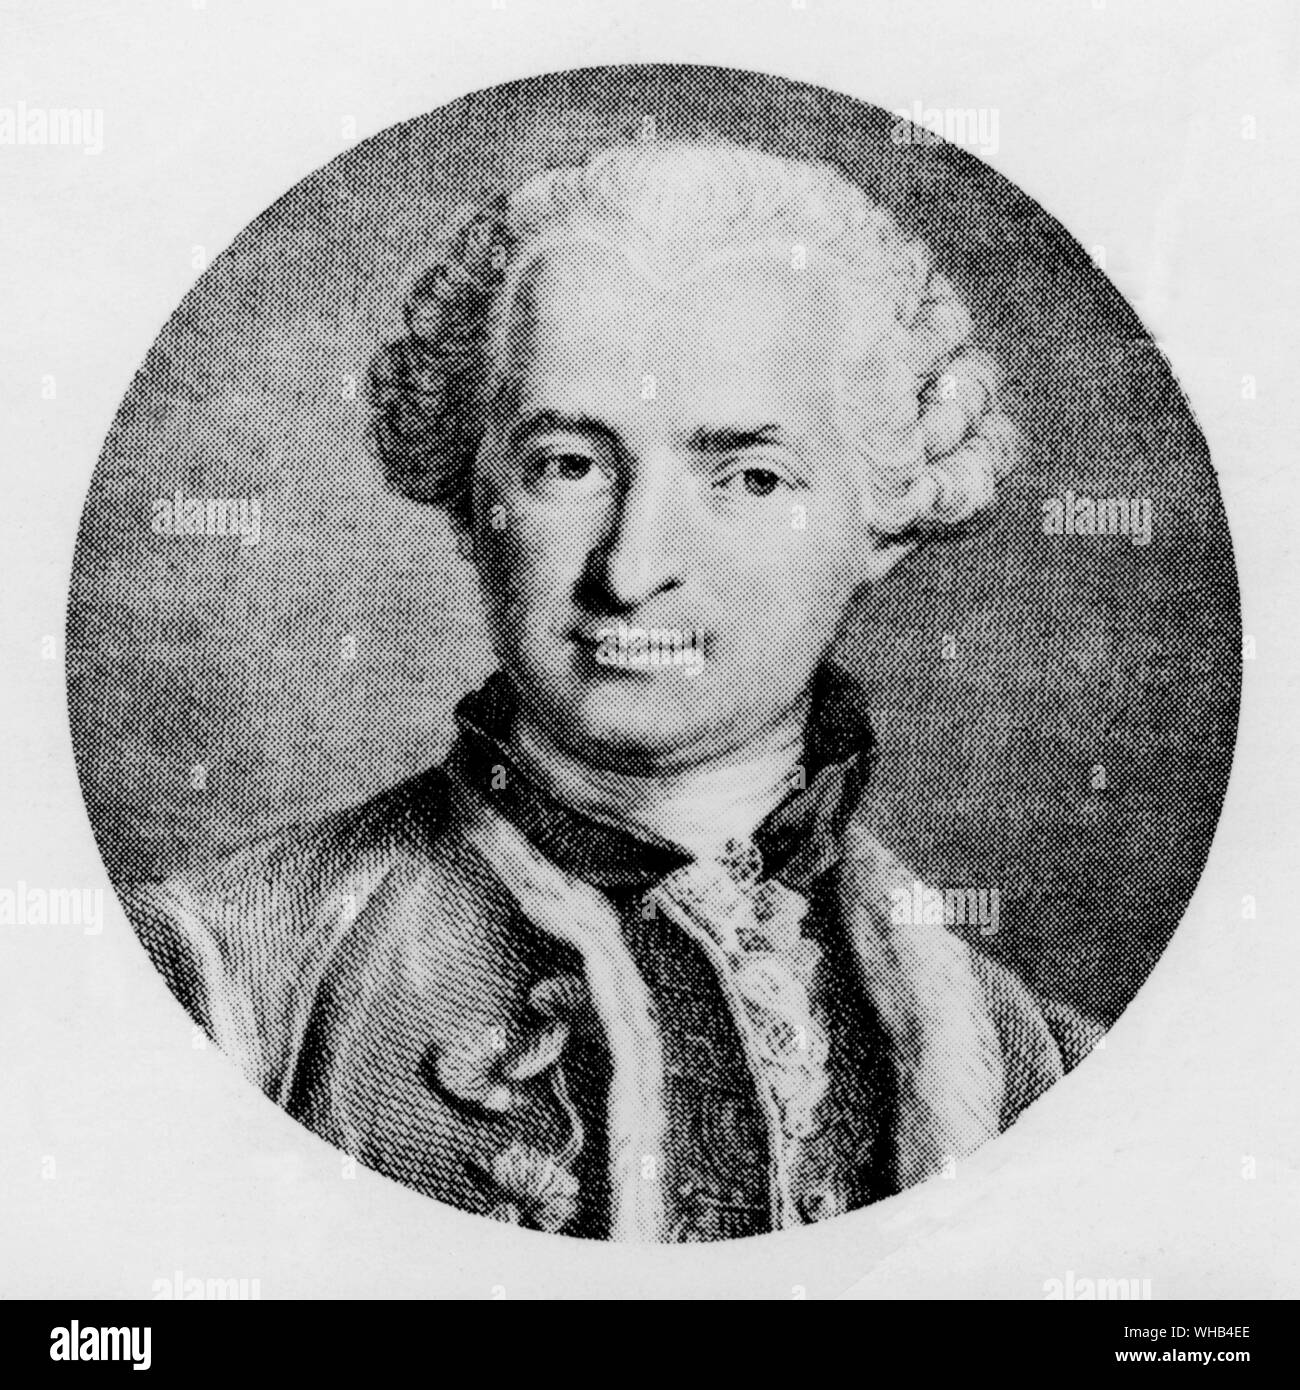 Der Comte de St. Germain von N. Thomas behauptete, das Elixier des Lebens entdeckt zu haben. Der Graf von St. Germain (Fl. 1710-1784) wurde verschiedentlich als Höfling, Abenteurer, Scharlatan, Erfinder, Alchemist, Pianist, Geiger und Komponist beschrieben, aber am besten ist als wiederkehrende Figur in den Geschichten über mehrere Stränge des Okkultismus bekannt - vor allem verbunden mit der Theosophie. Einige Quellen behaupten, dass sein Name nicht familial, sondern wurde von ihm als eine französische Version der Lateinischen Sanctus Germanus erfunden, Sinne heiligen Bruder.. Stockfoto